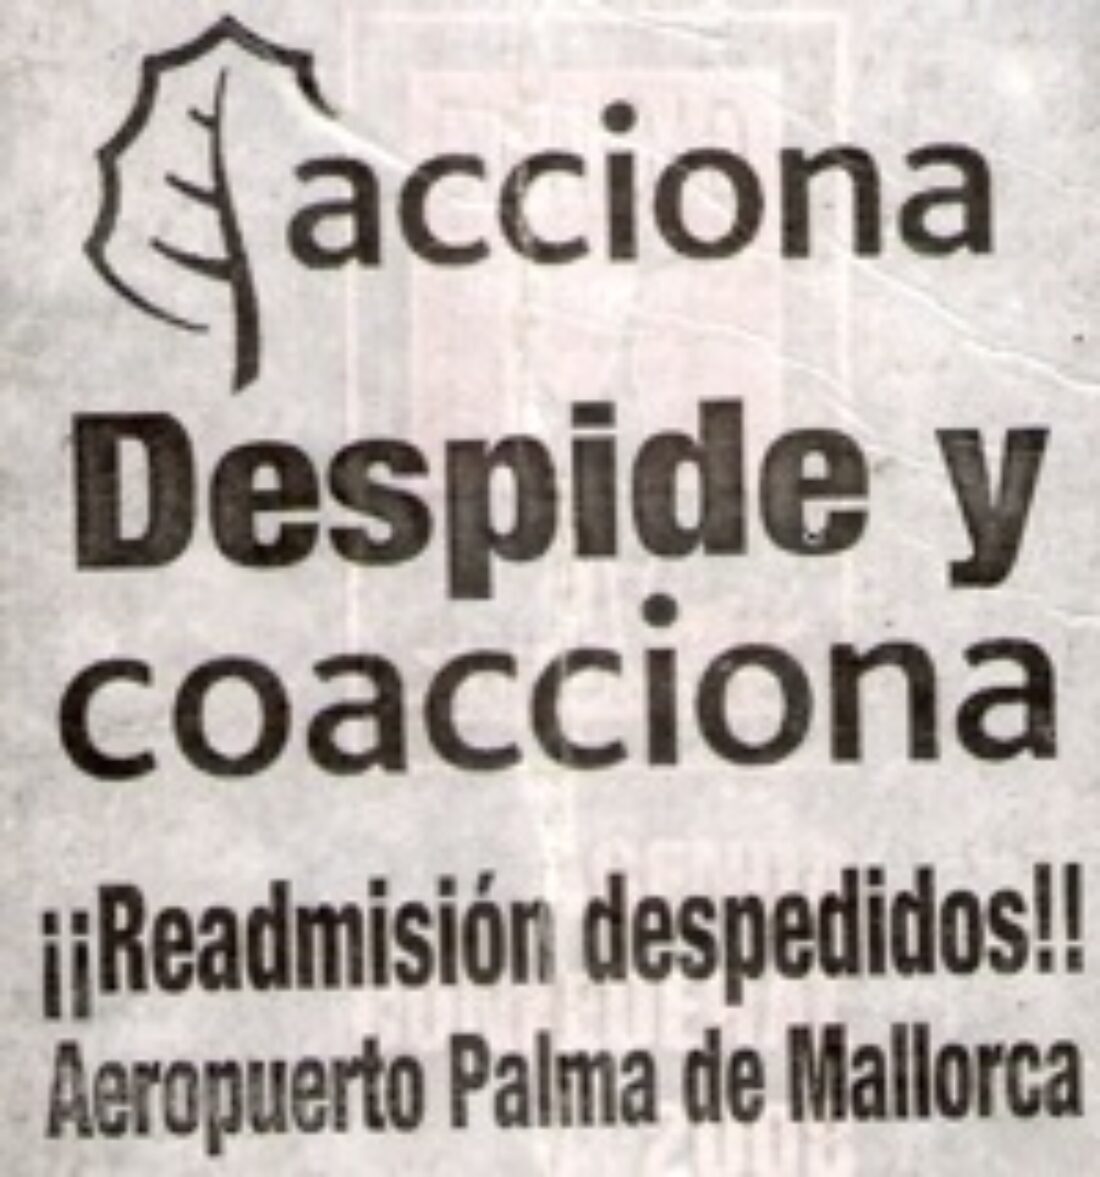 19 agosto, Palma de Mallorca : Concentración por la readmisión de los despedidos de Acciona